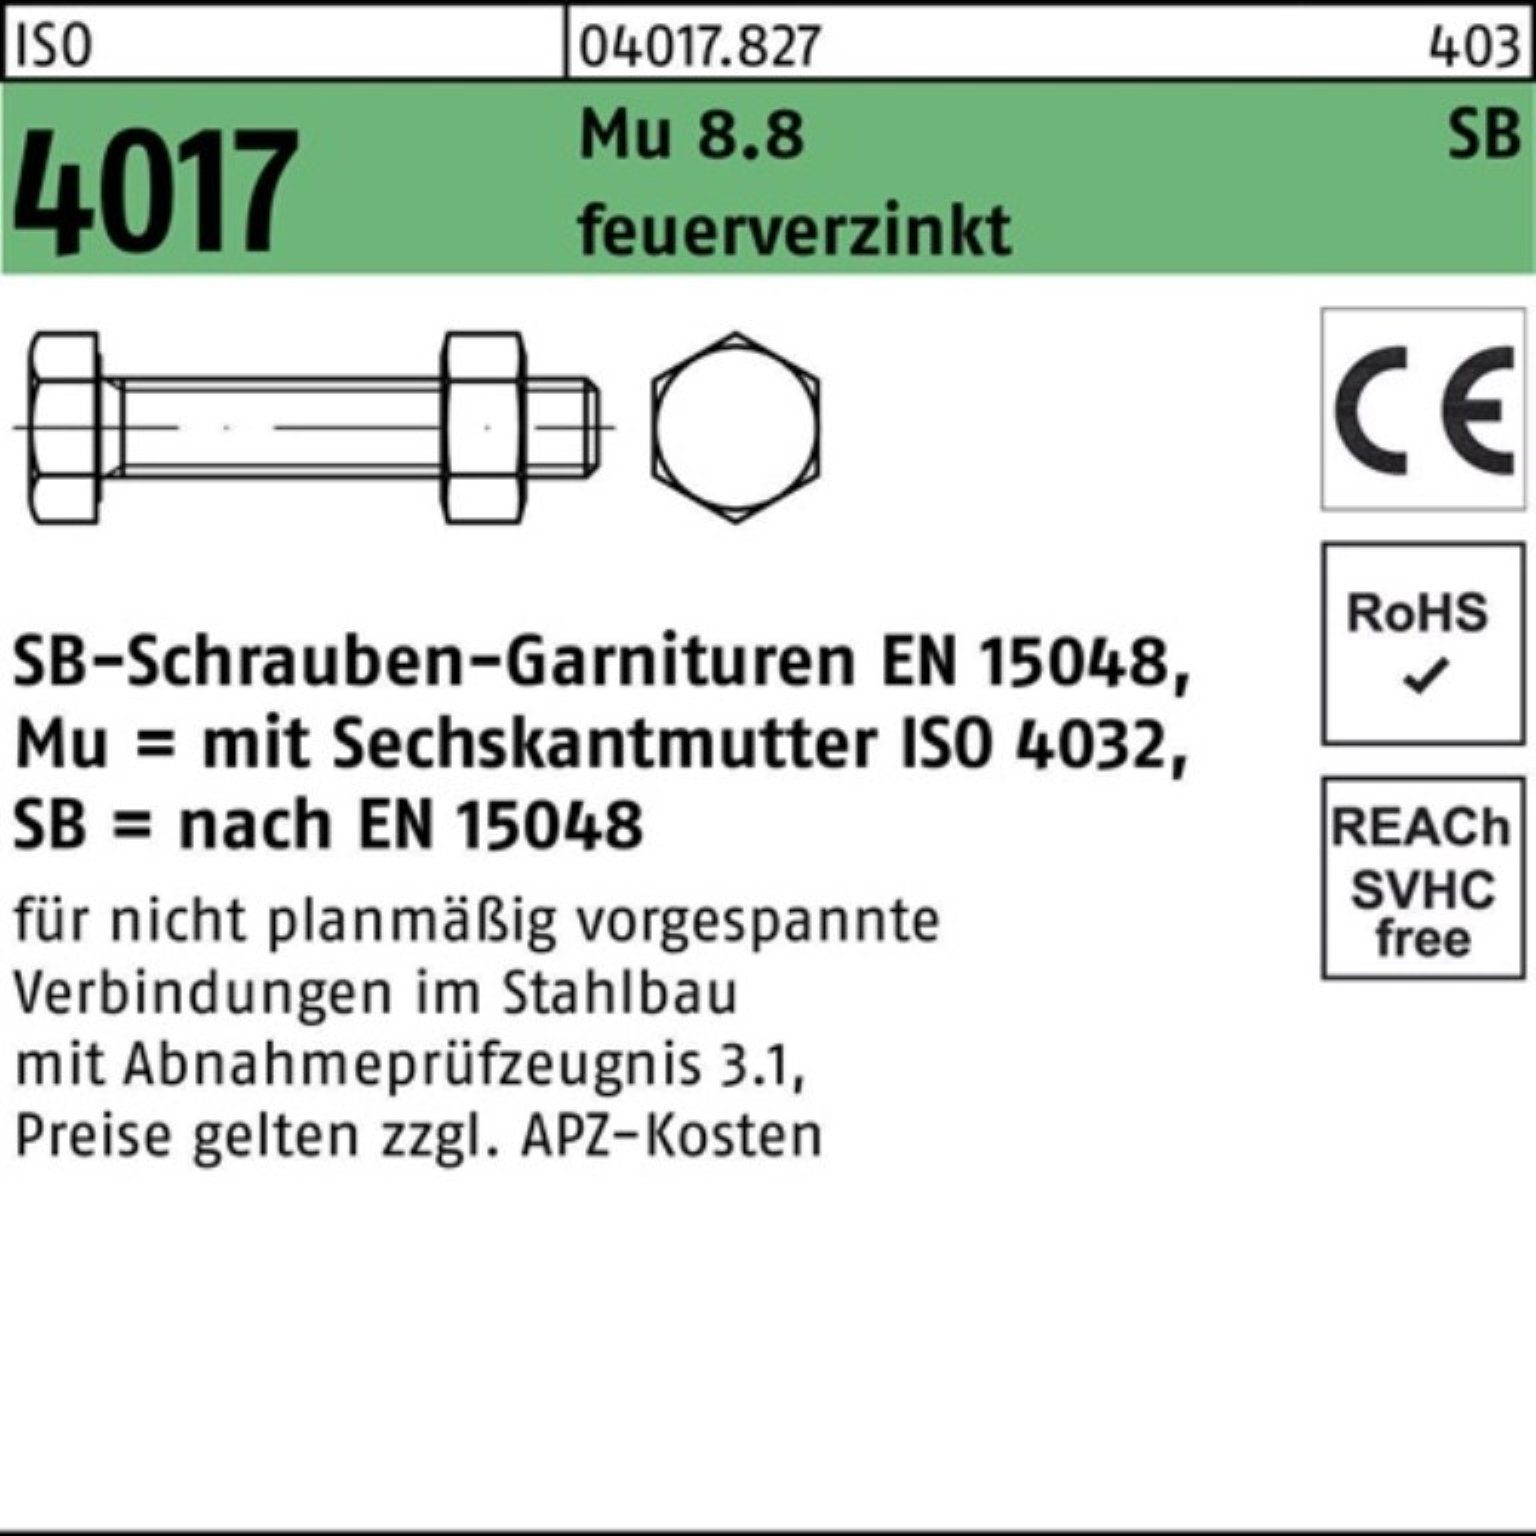 Pack 90 100er Sechskantschraube 8.8 Mutter VG Bufab feuerverz. M20x 4017 Sechskantschraube ISO